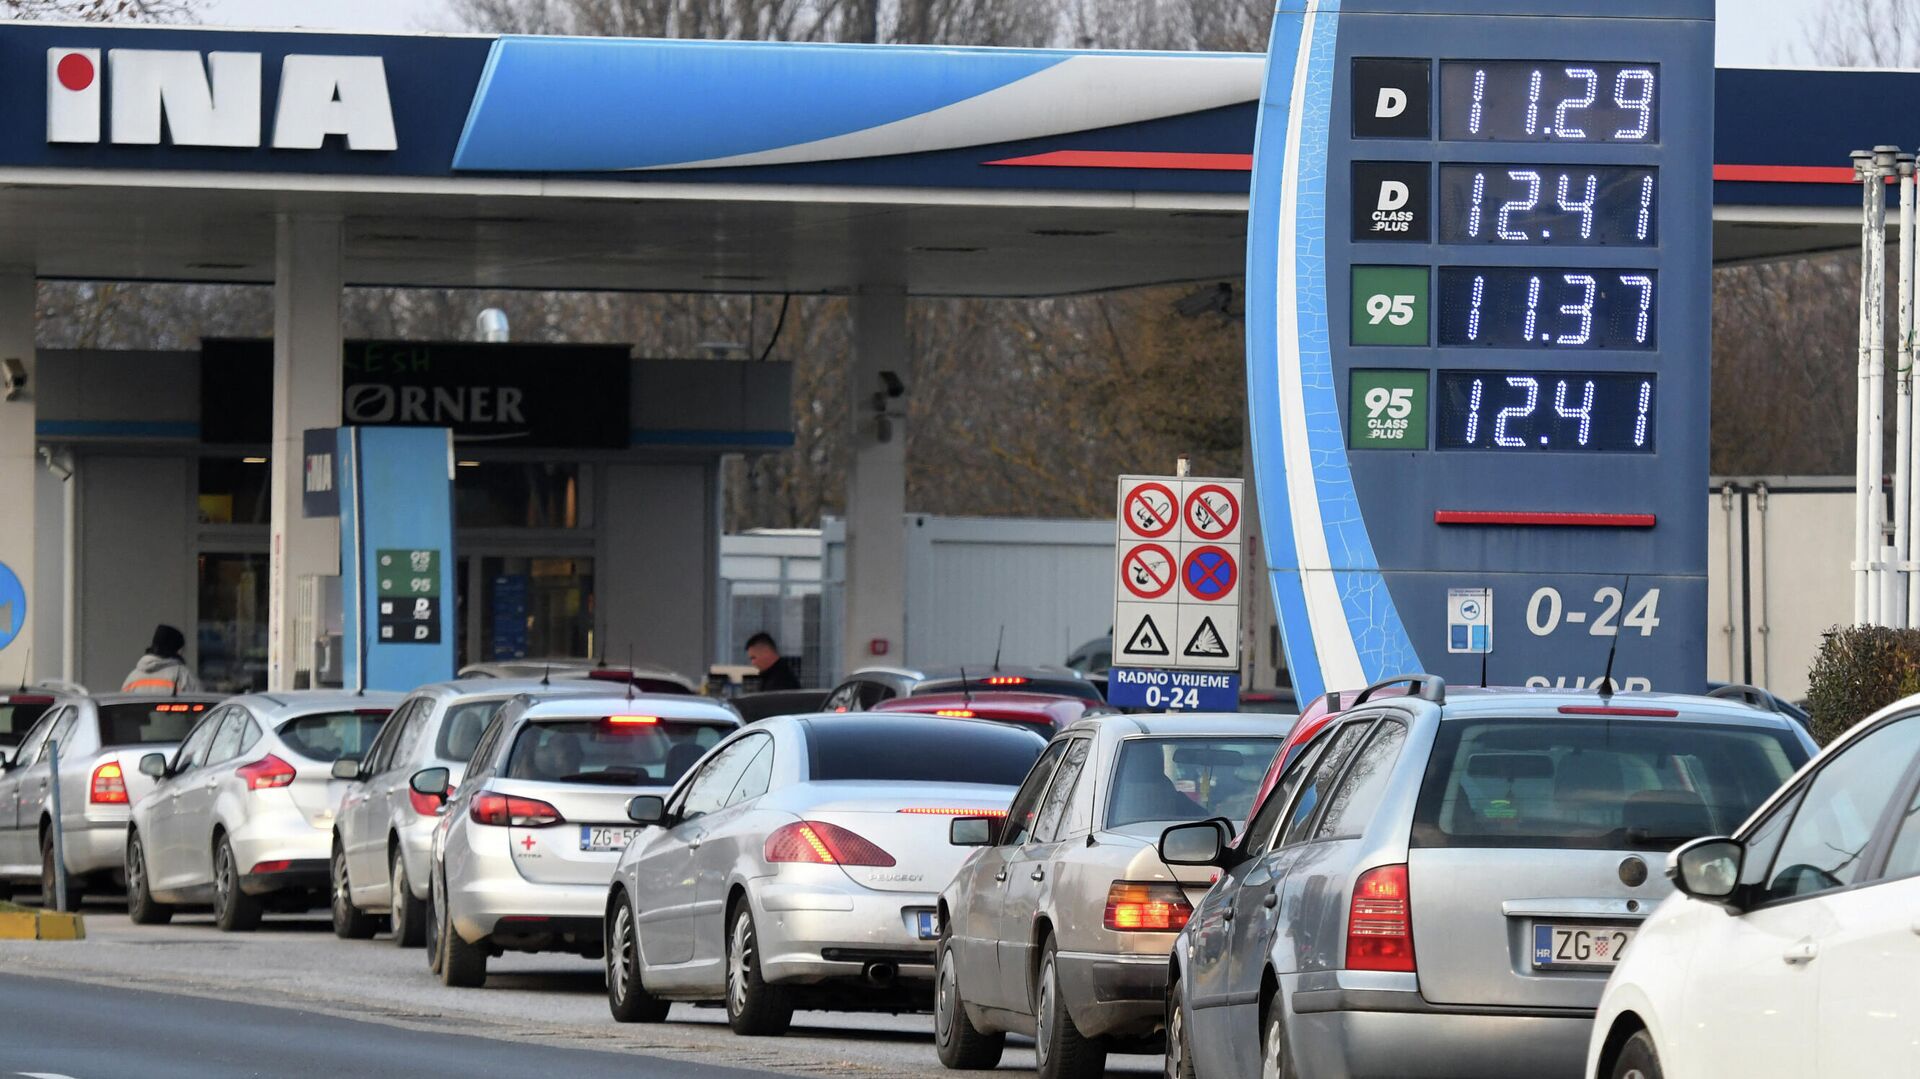 Автомобилисты стоят в очереди на заправку в Зегребе, чтобы успеть заправиться до повышения цен на топливо. 7 марта 2022 - РИА Новости, 1920, 08.03.2022